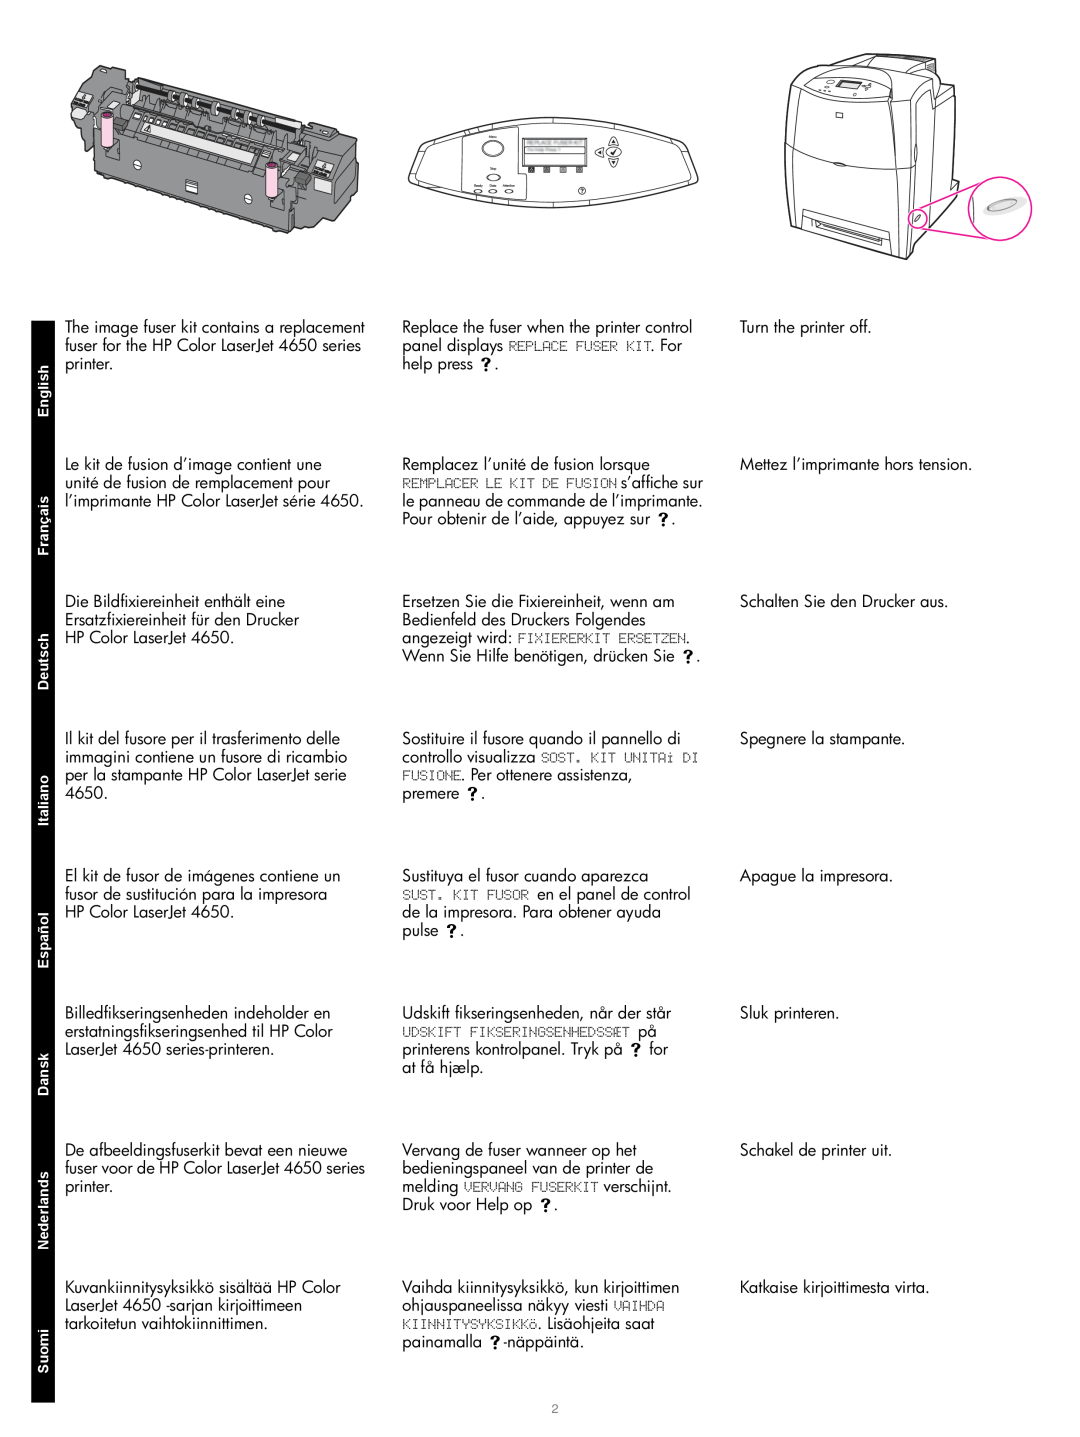 HP Q3677A 220V Image Fuser Kit, Q3676A 110V Image Fuser Kit manual Udskift fikseringsenheden, når der står 